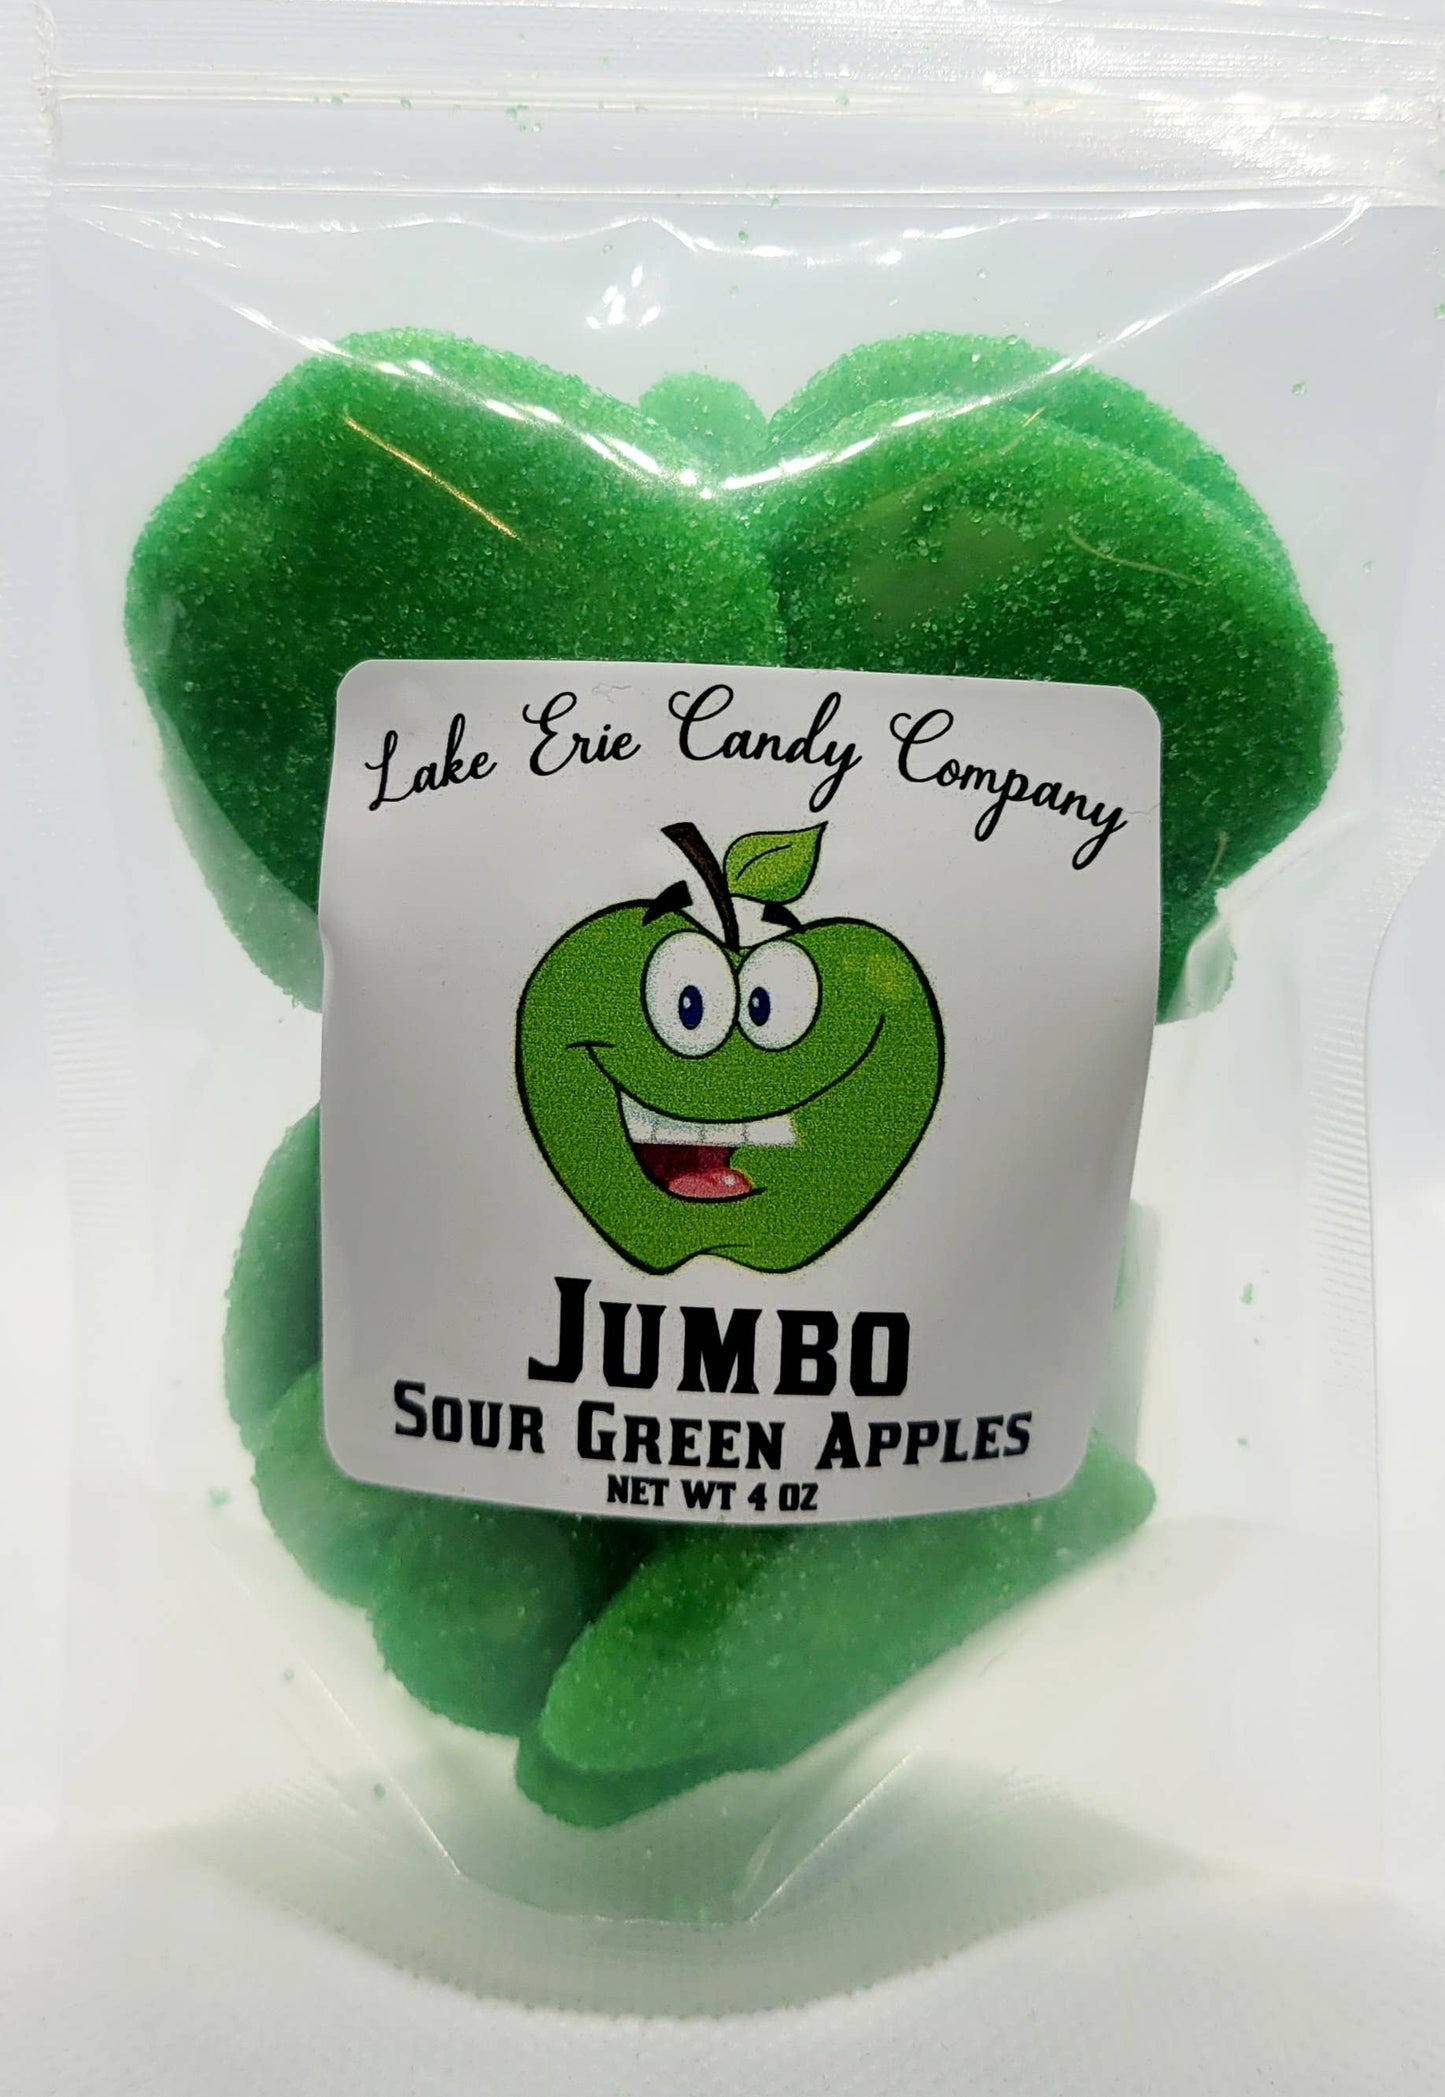 Jumbo Sour Green Apples